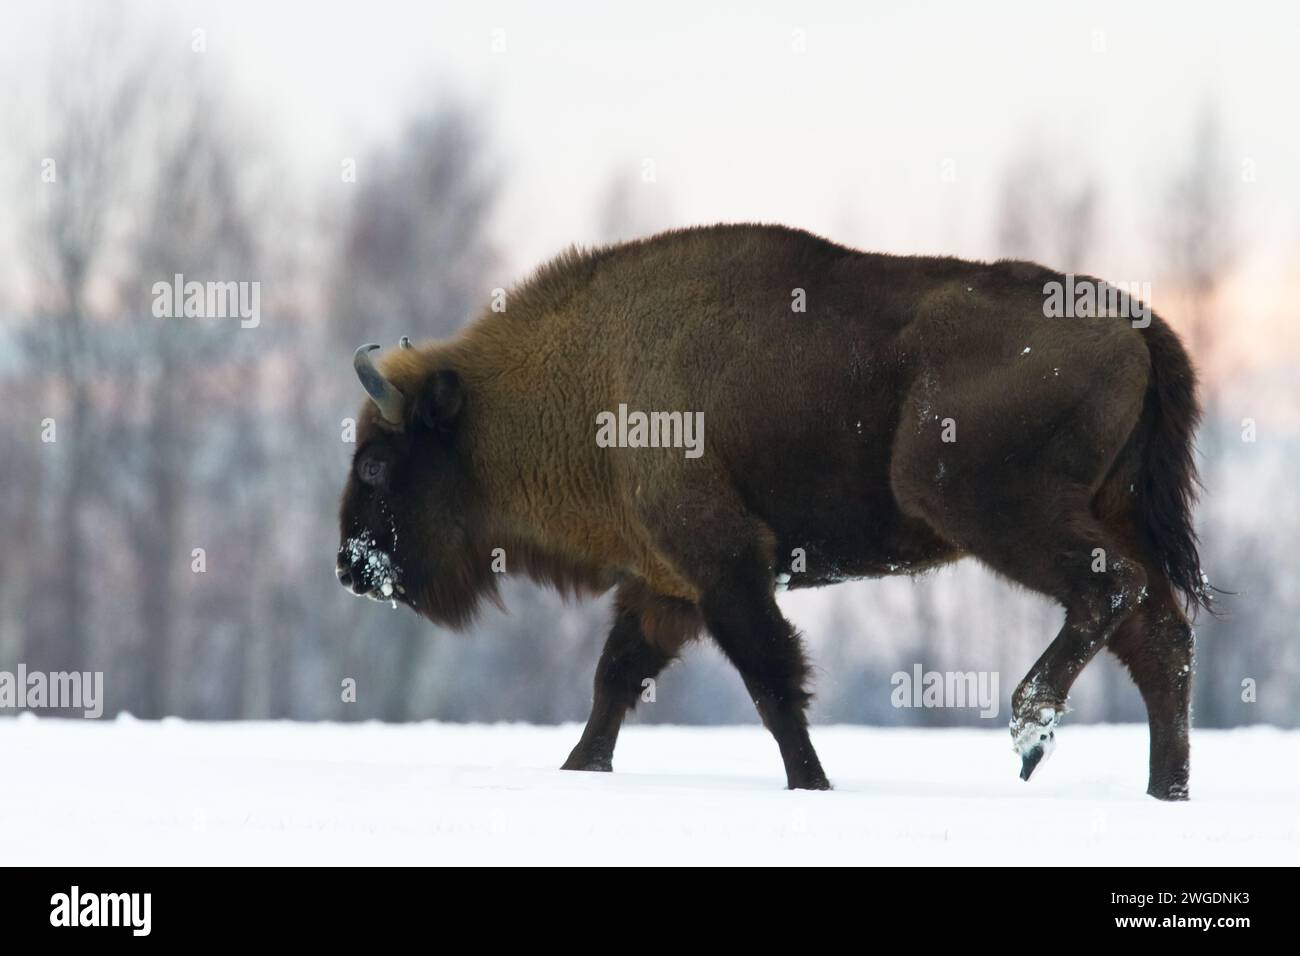 Mammifères - nature sauvage bison européen bison bonasus Wise debout sur le champ enneigé d'hiver partie nord-est de la Pologne, Europe Knyszynska Fore Banque D'Images